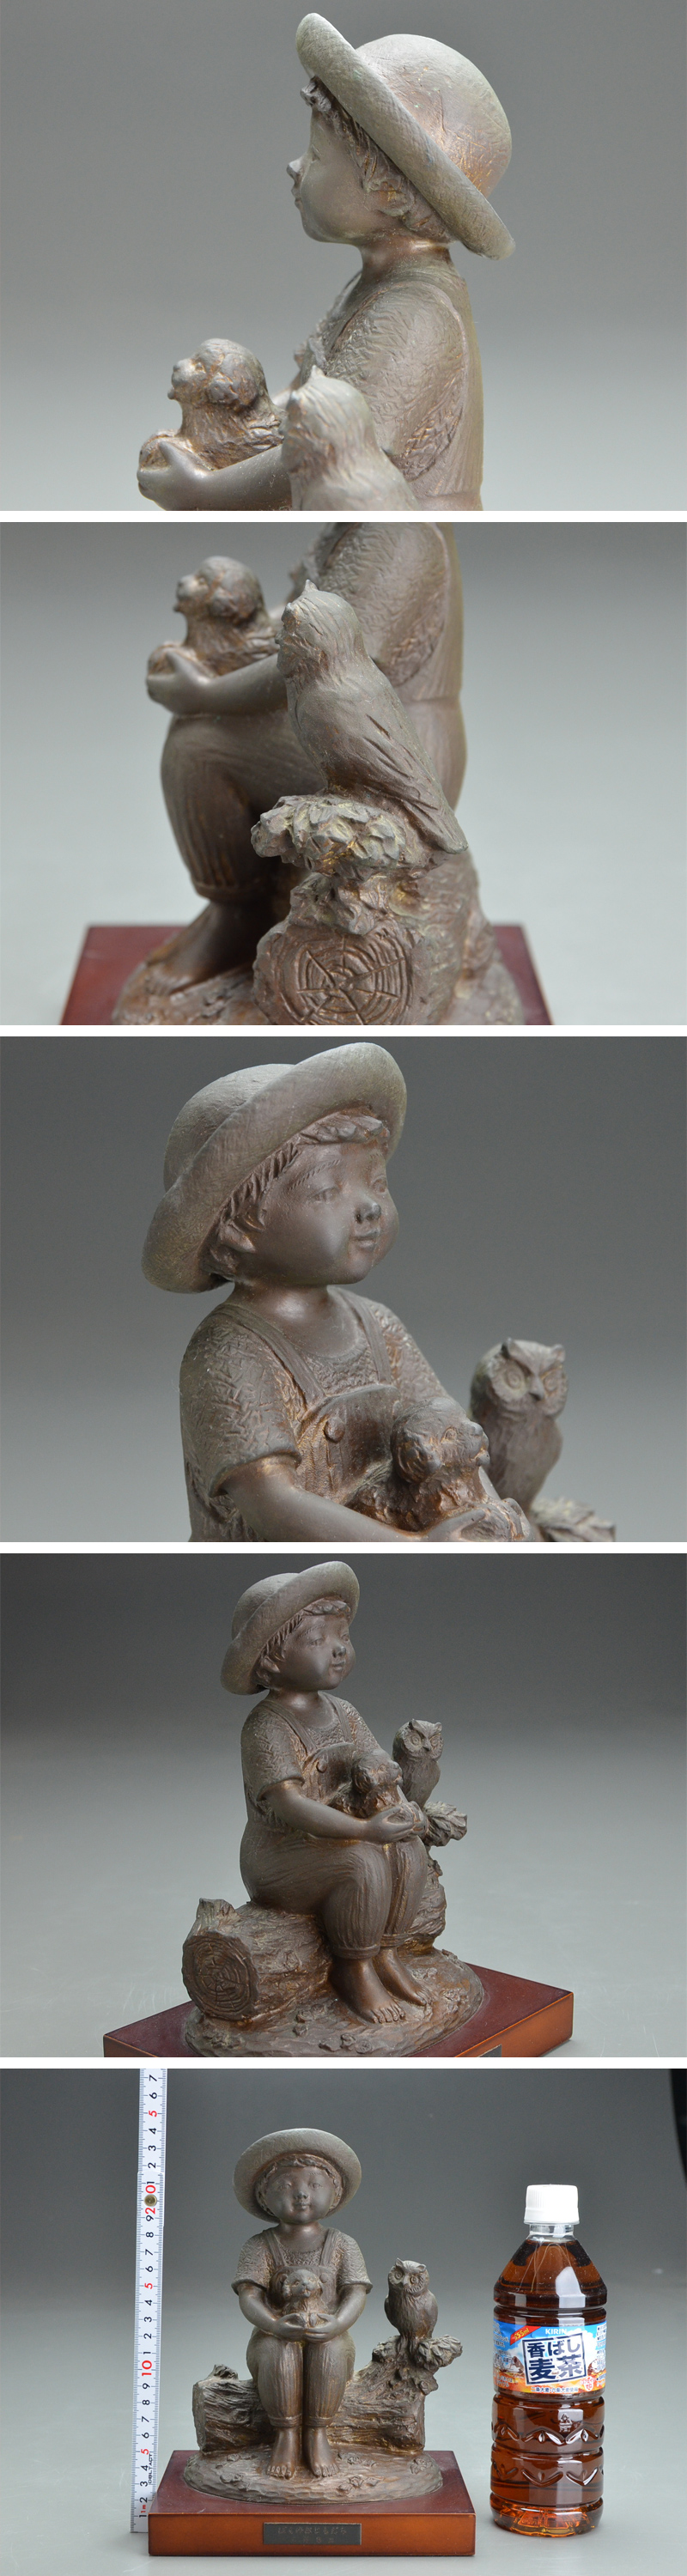 通販直営彫刻家 玉野 勢三 作 子供のブロンズ像『ぼくのおともだち』高さ24.5㎝ 06i841 西洋彫刻